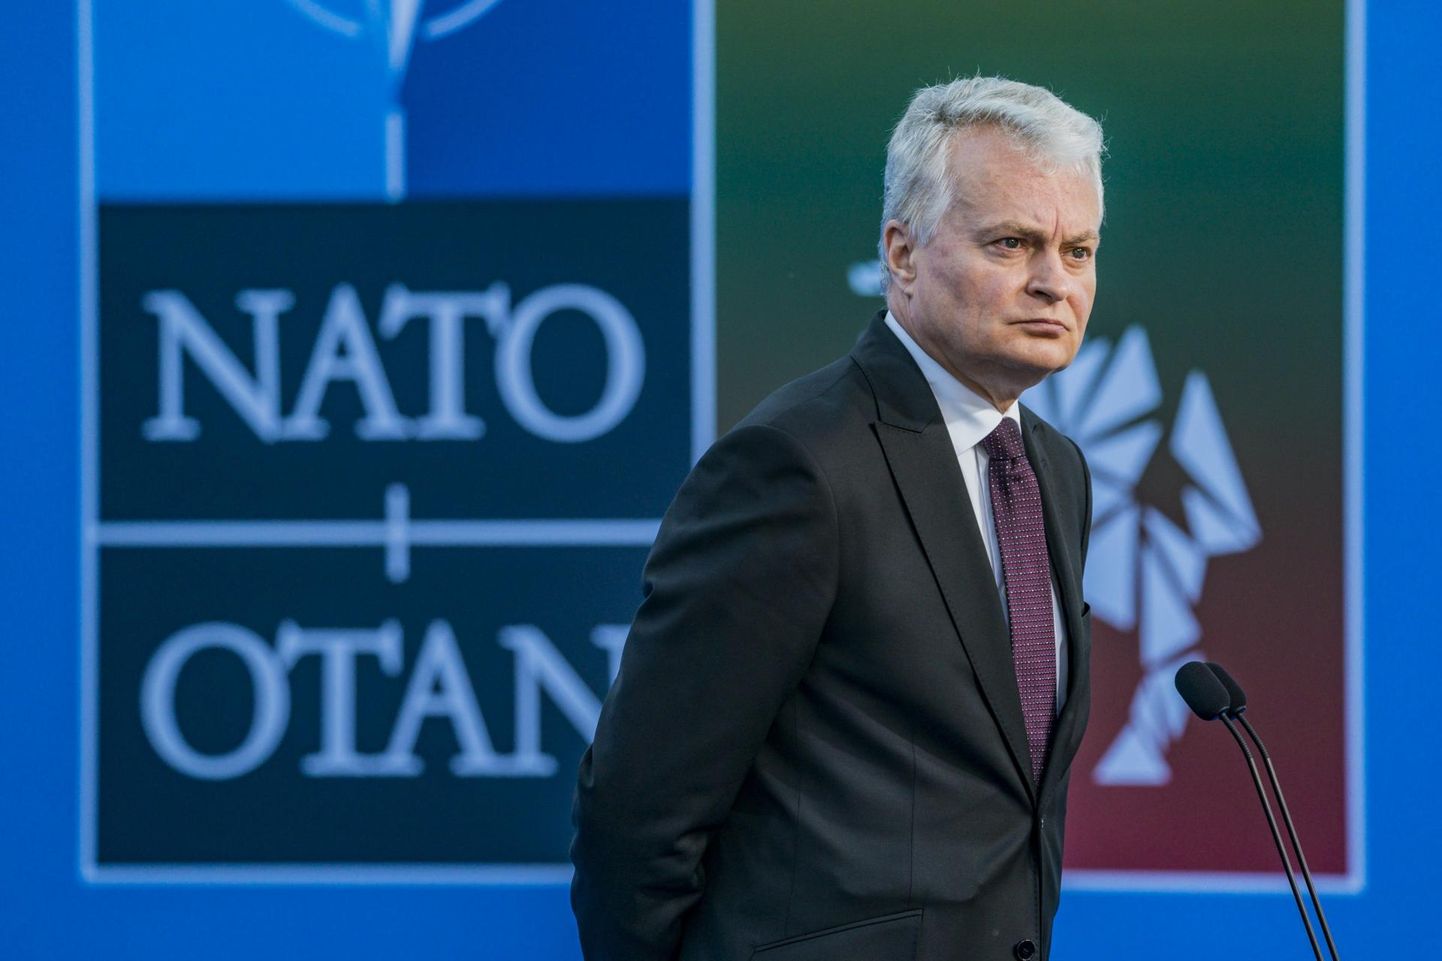 Leedu president Gitanas Nausėda Vilniuse NATO tippkohtumisel.